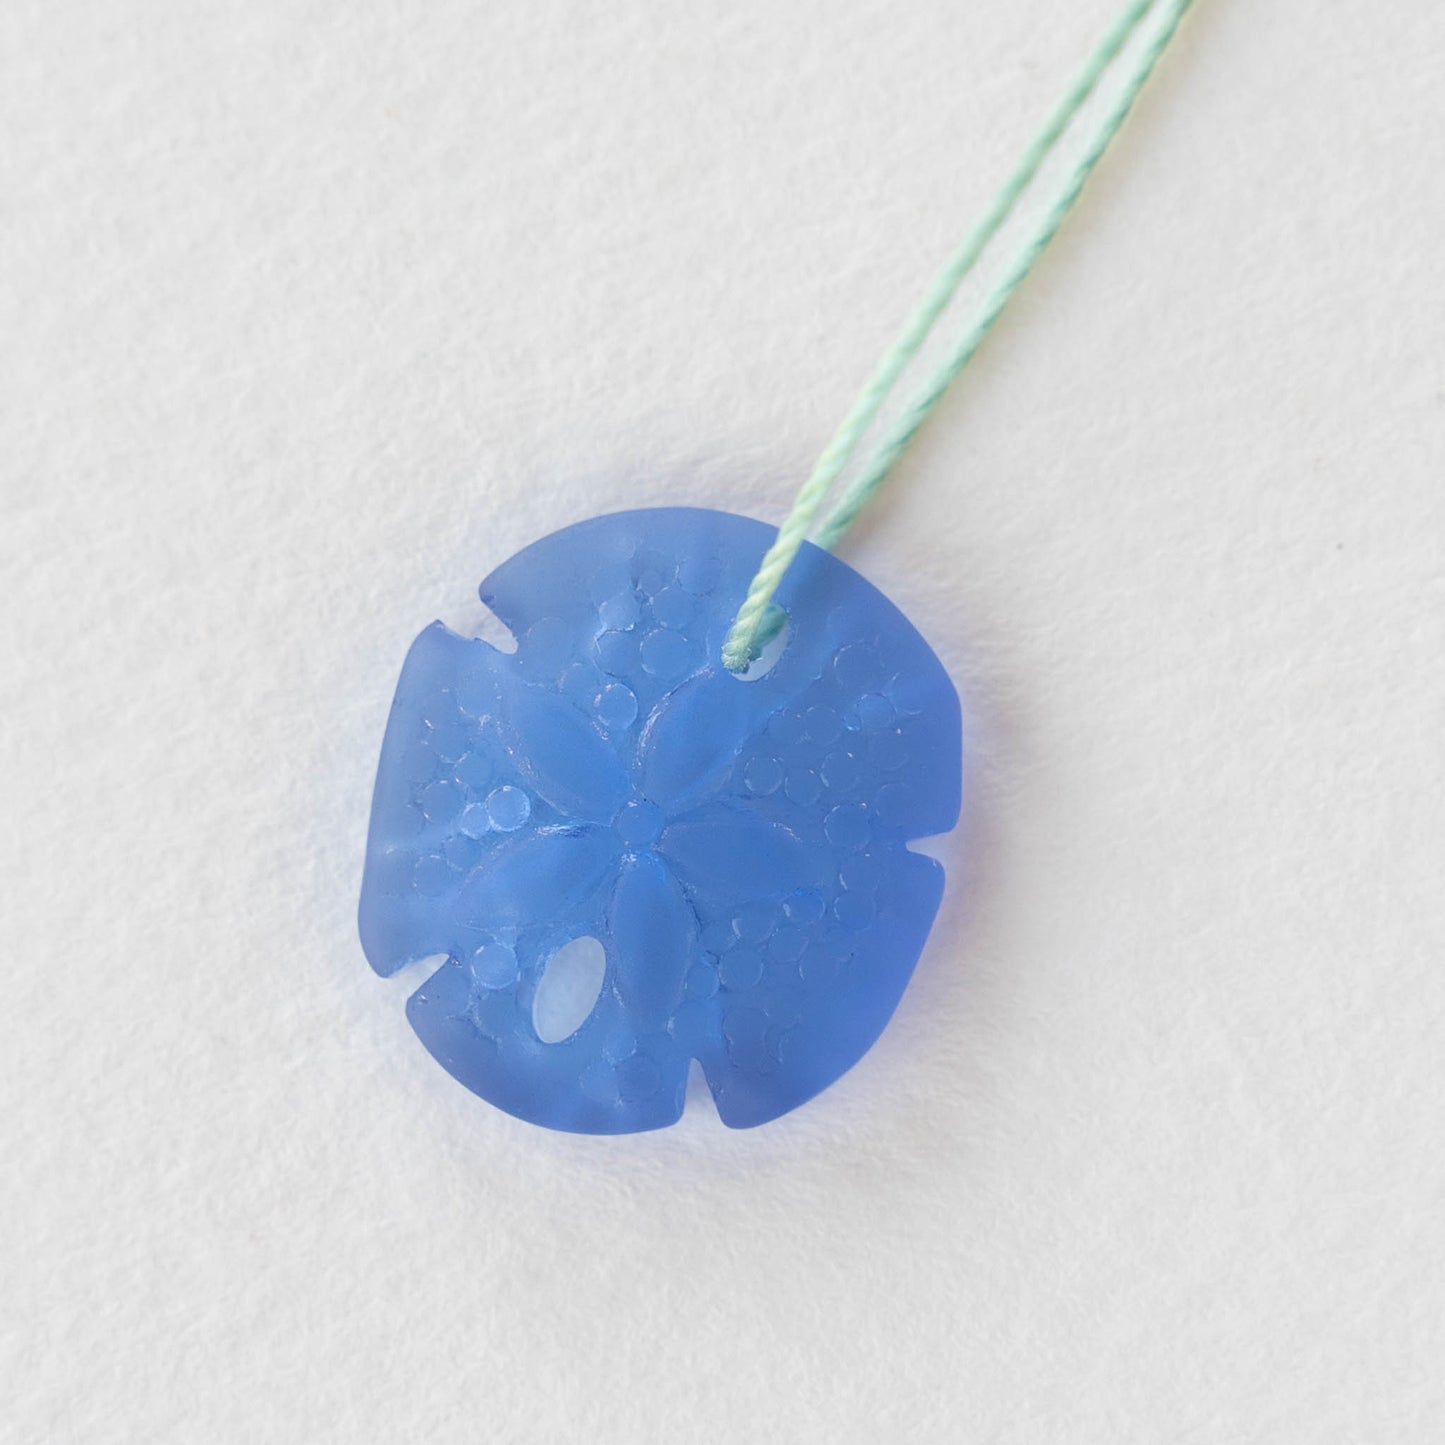 Glass Sand Dollar Beads - Sapphire Blue - 4 Beads